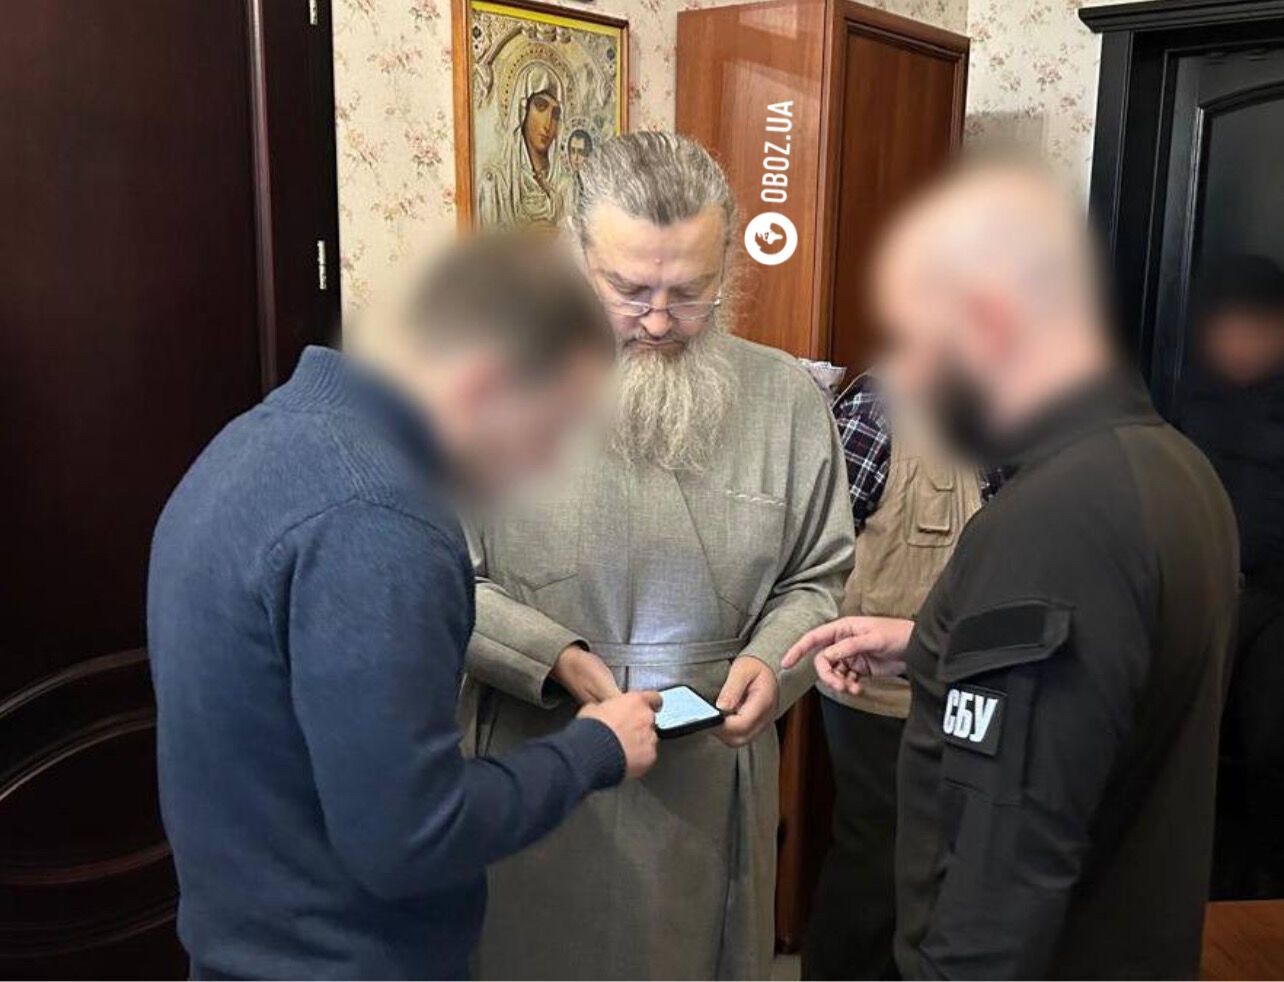 СБУ провела обыски у митрополита УПЦ МП, который говорил, что украинцы "заслужили" бомбардировку: объявлено подозрение. Фото